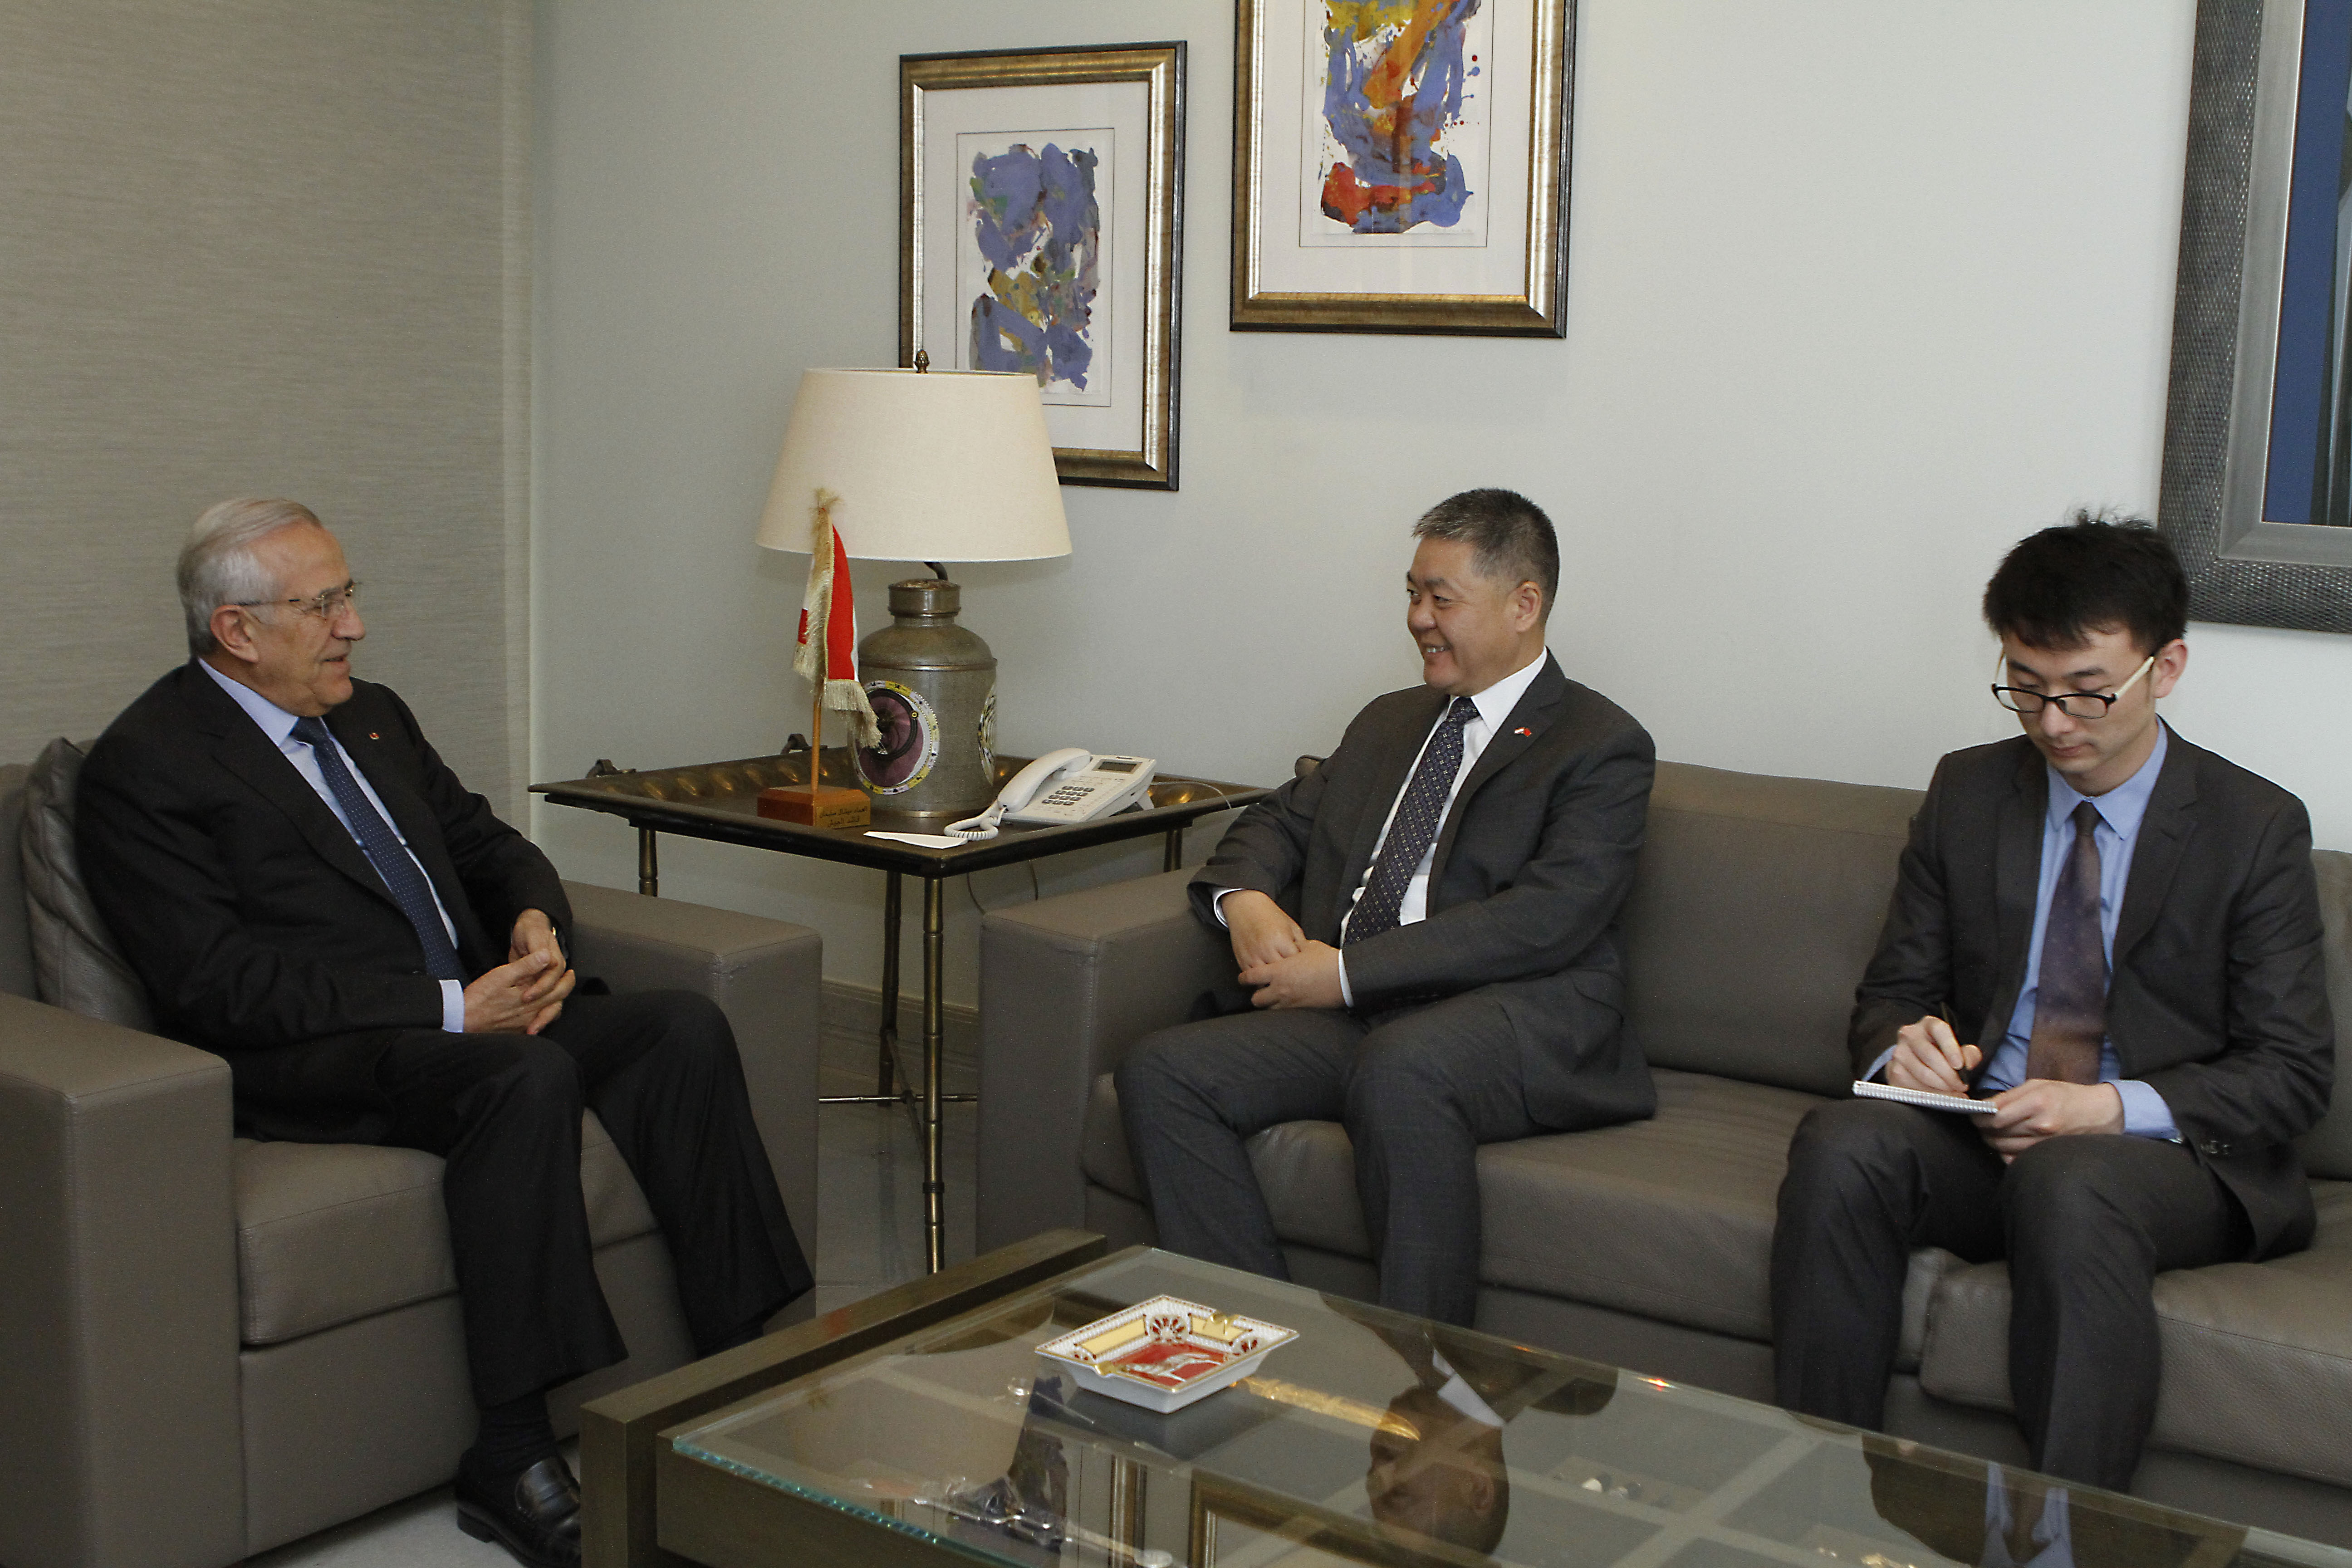 سليمان استقبل سفير الصين: صورة لبنان على المحك الدولي